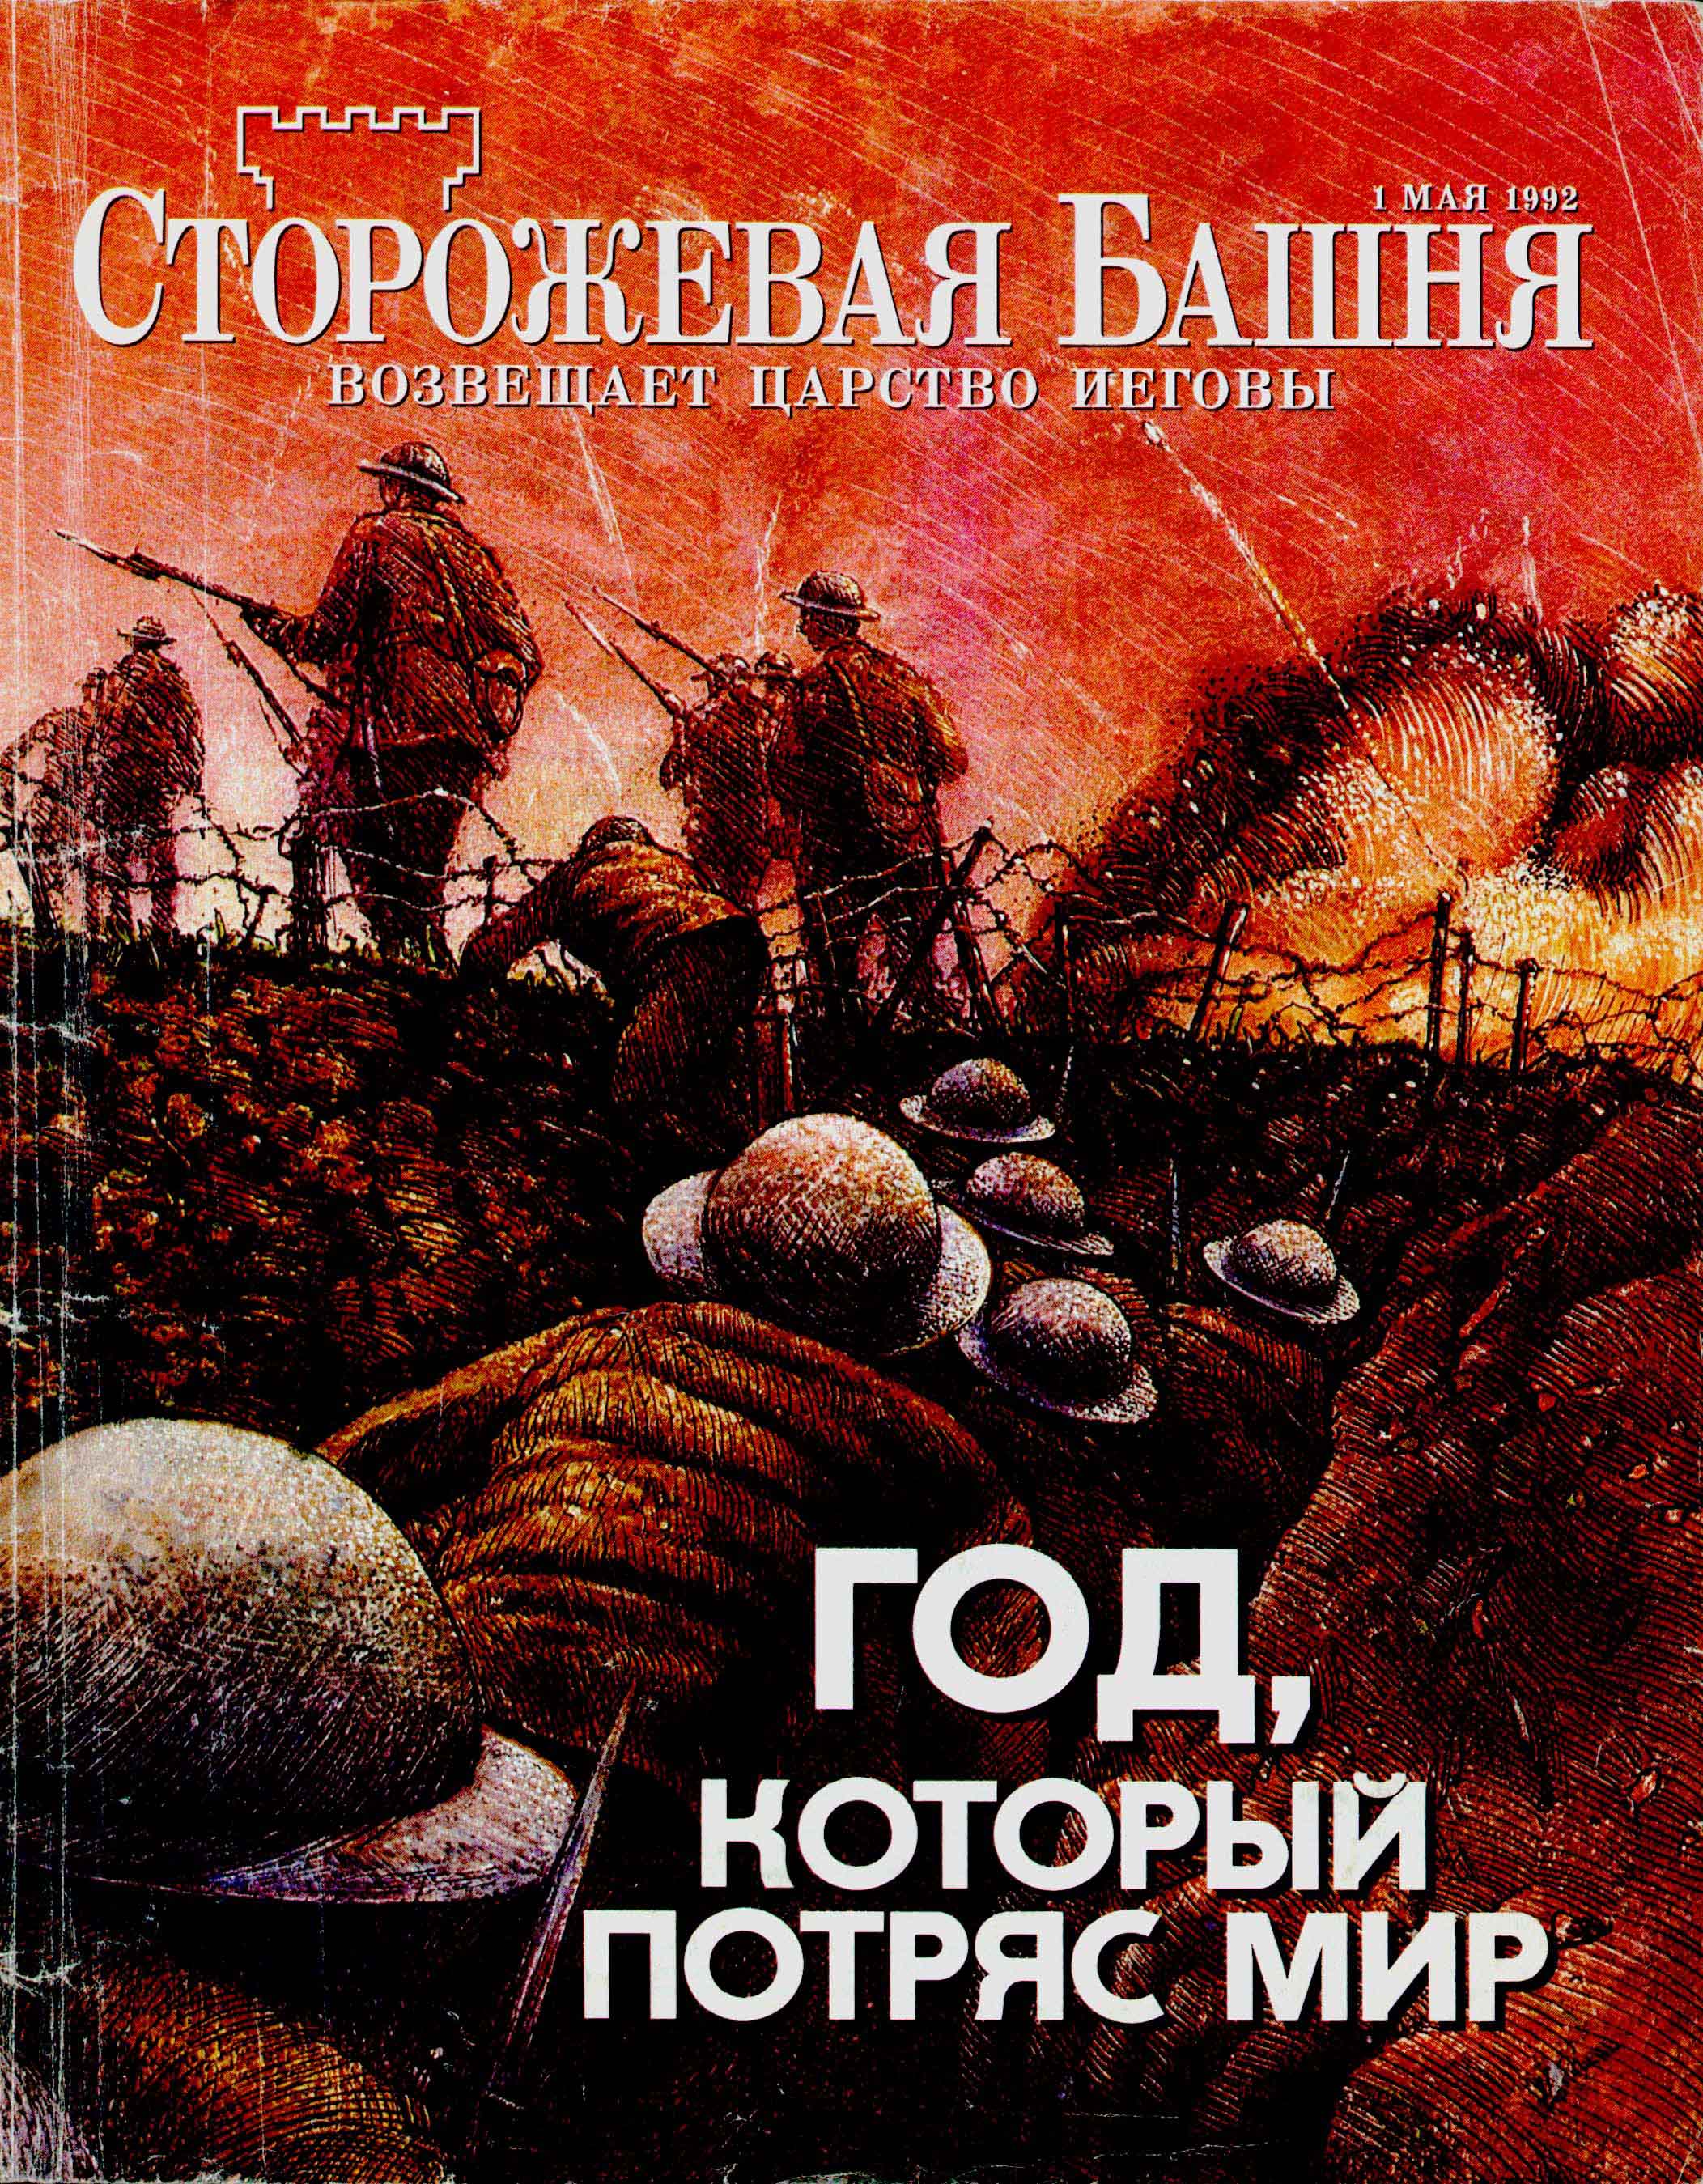 Обложка журнала Сторожевая башня от 1 мая 1992 года